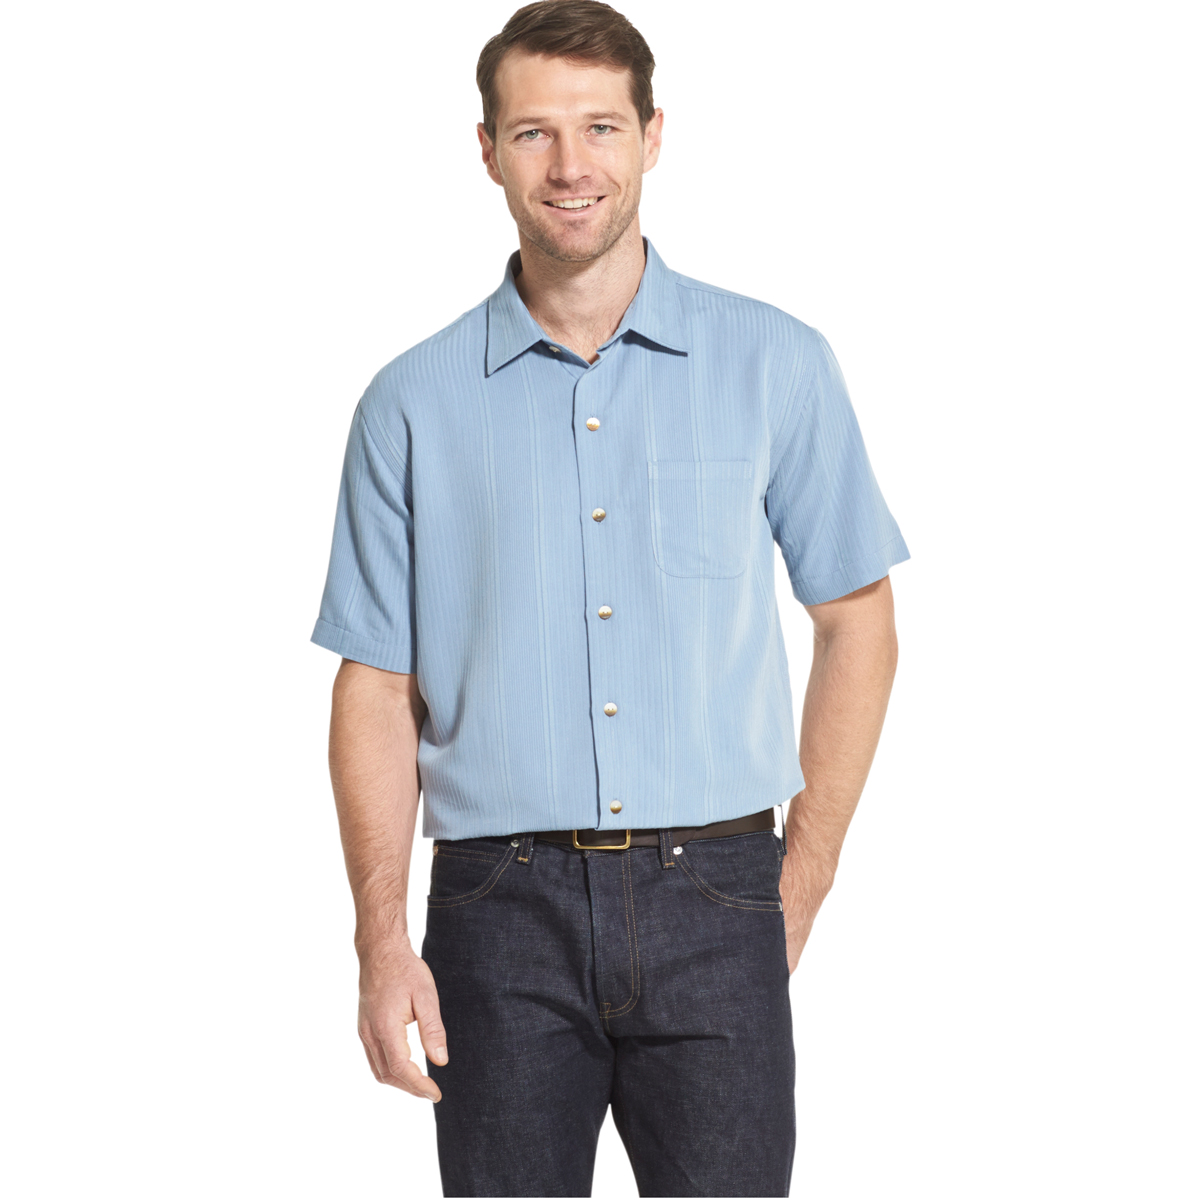 Van Heusen Men's Air Non-Iron Short-Sleeve Shirt - Blue, XL